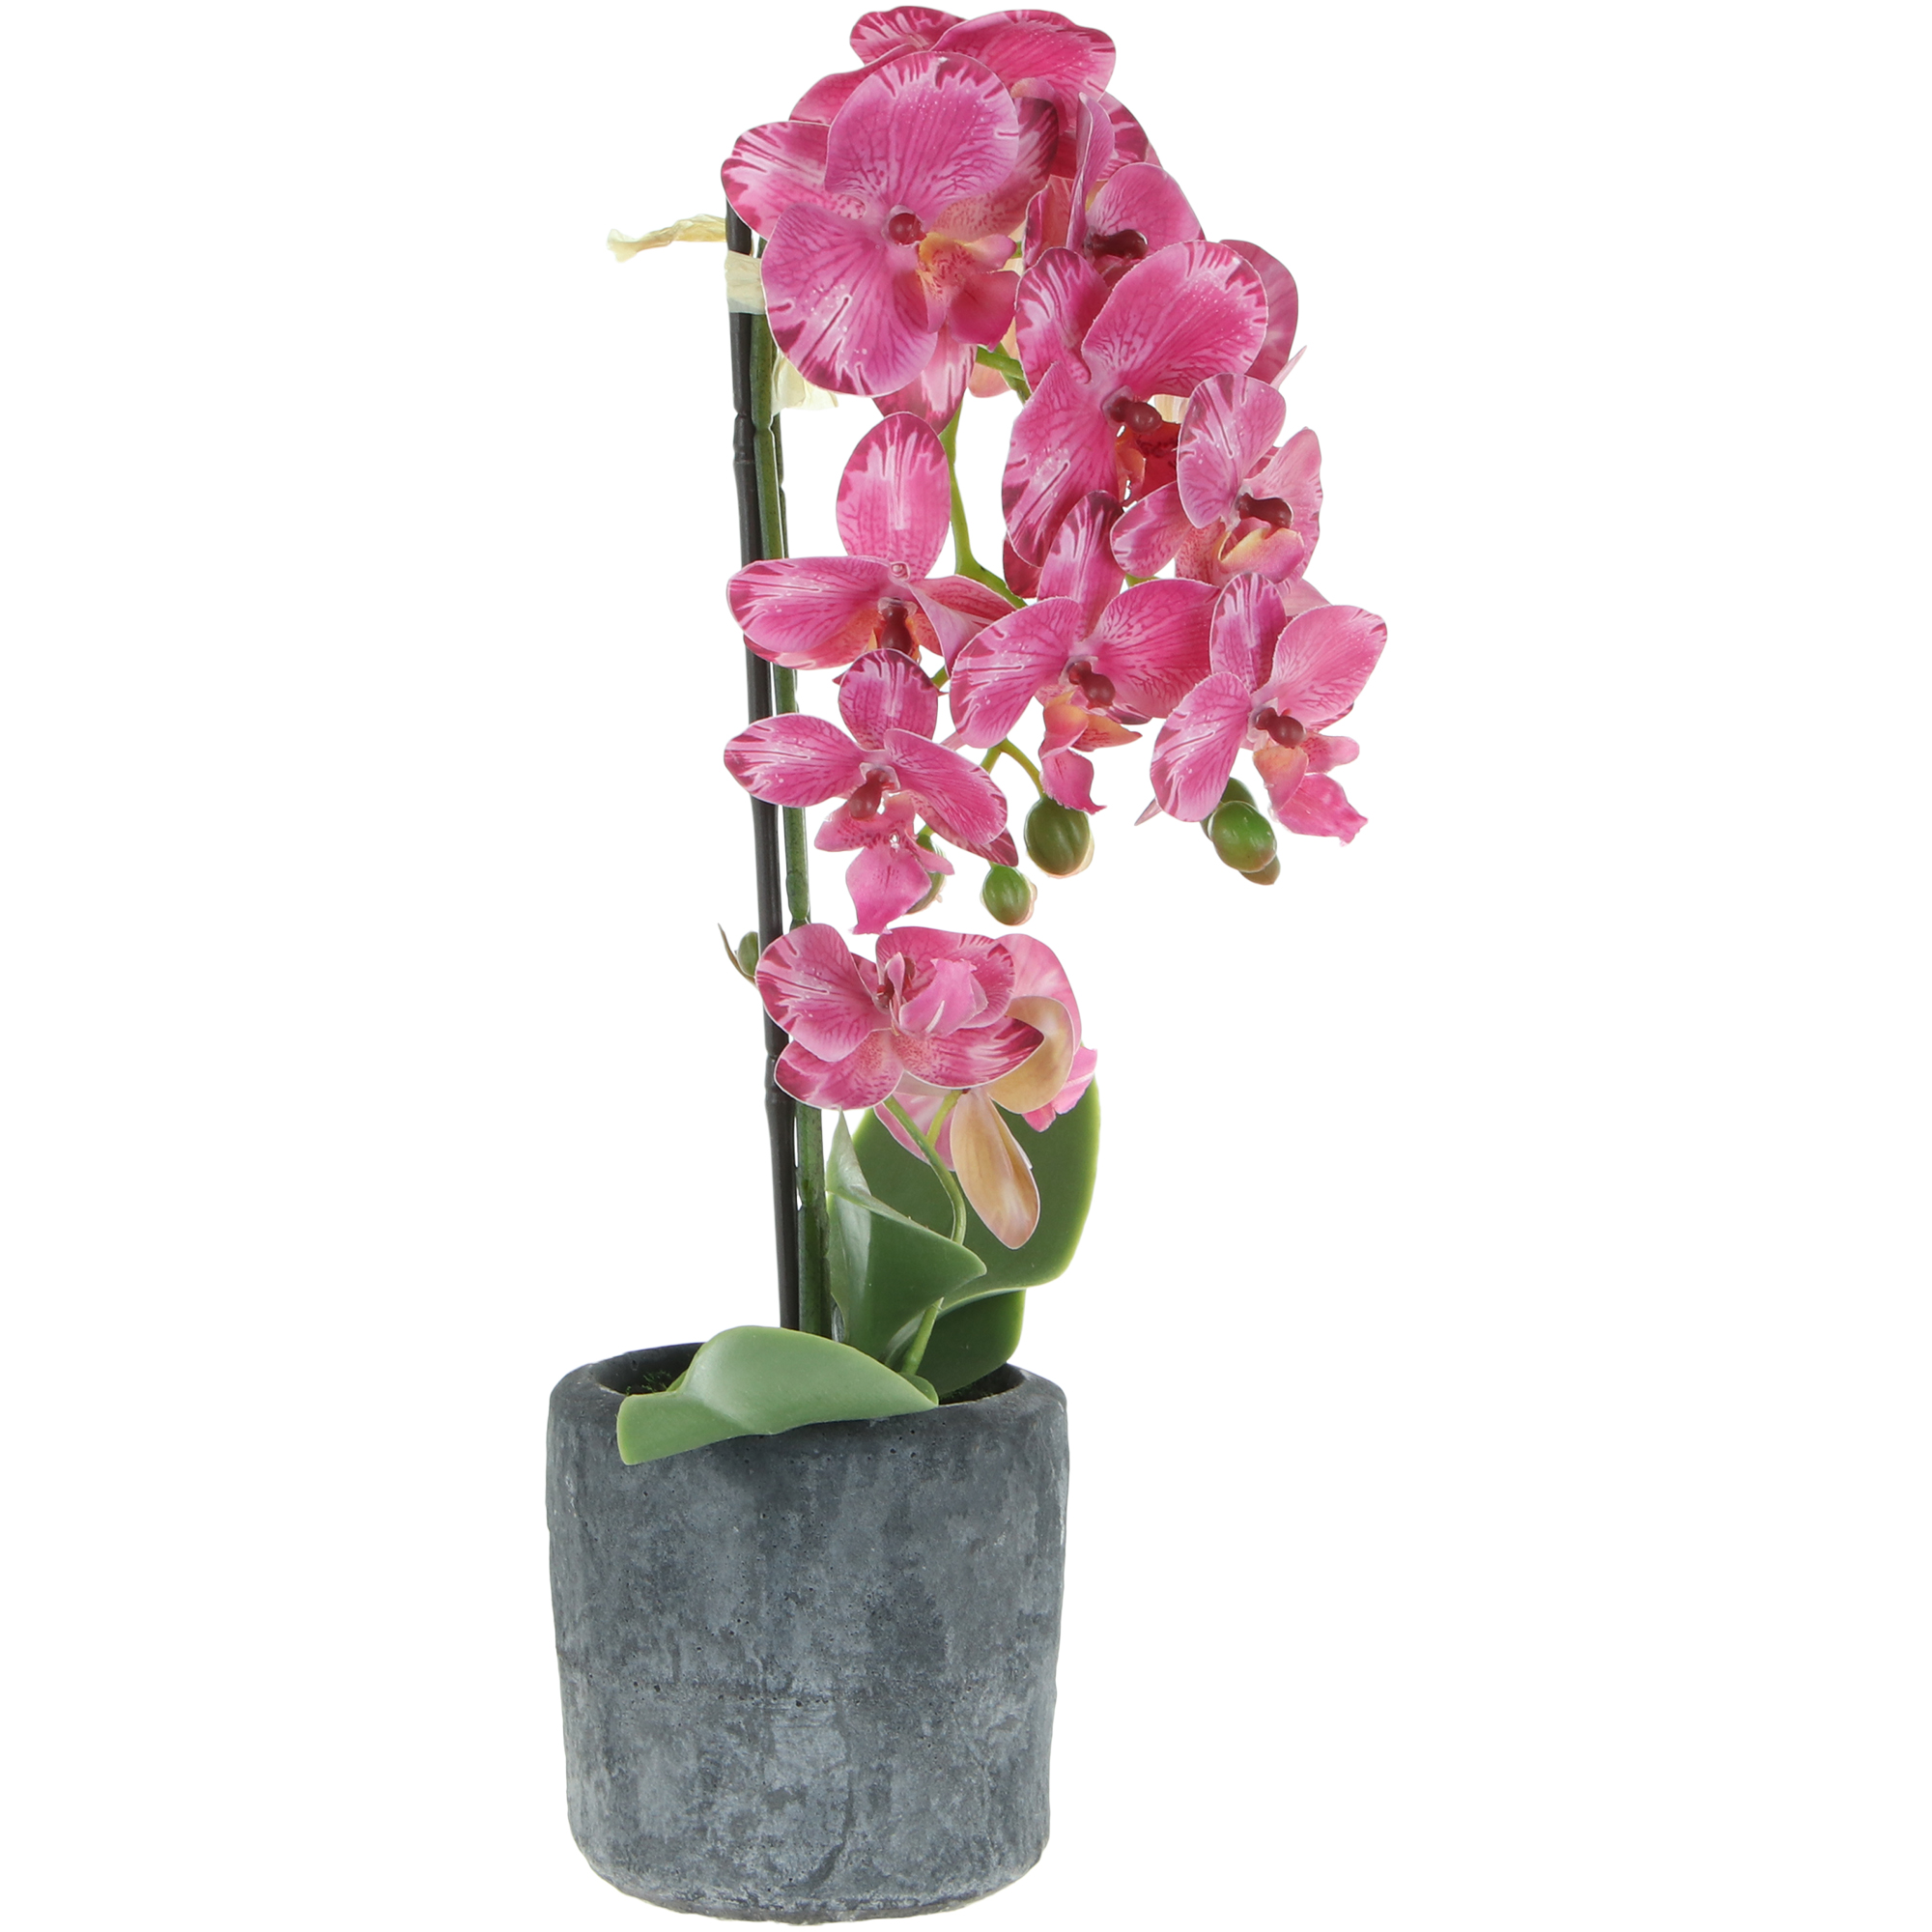 Цветок искусственный в горшке Fuzhou Light орхидея 3 цвета 42 см - фото 1